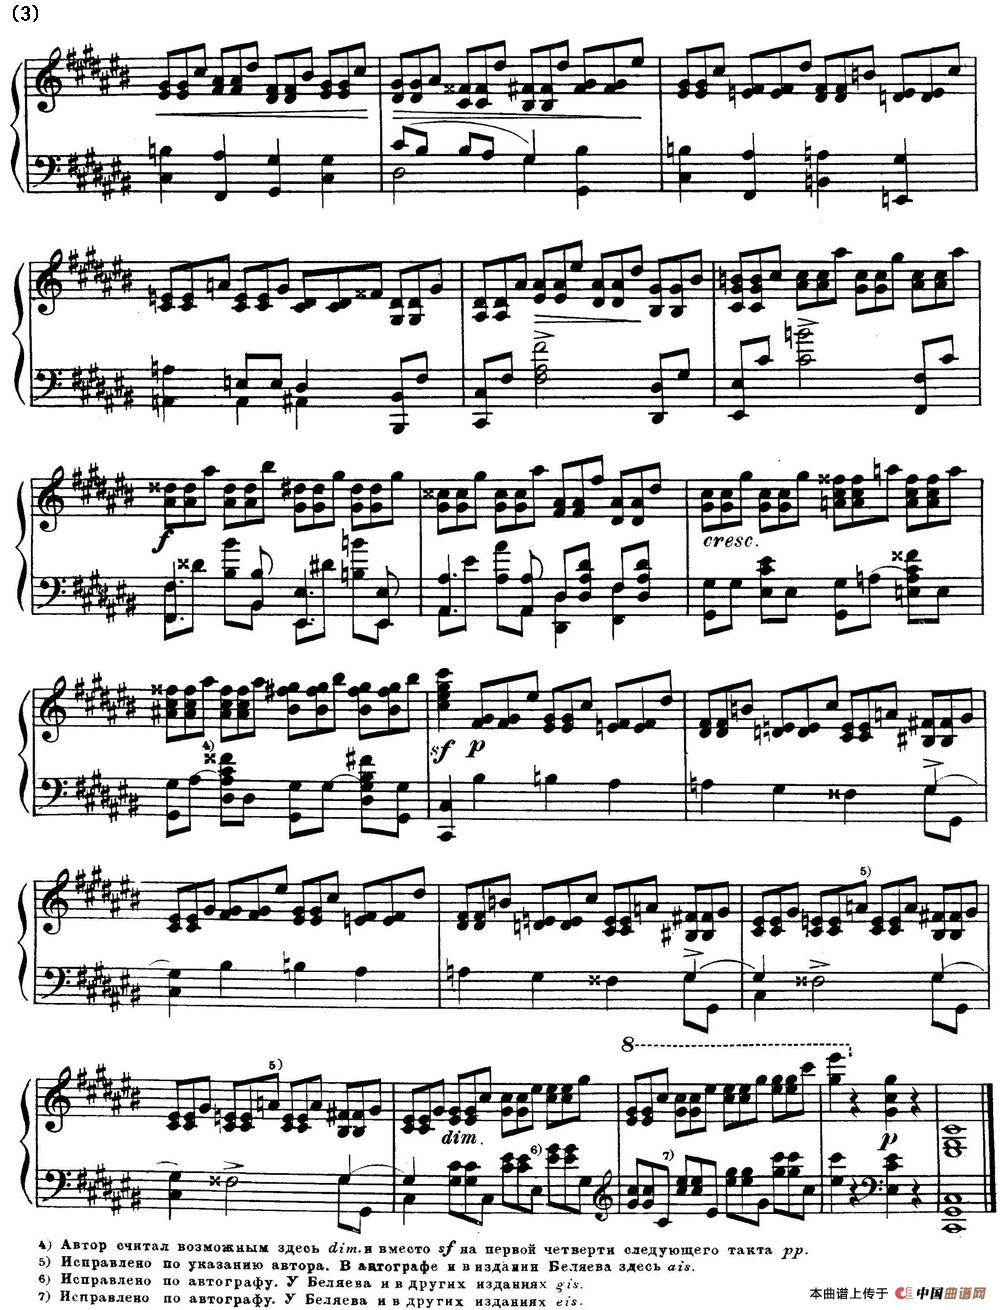 斯克里亚宾12首钢琴练习曲 Op8（No.1 Alexander Scriabin Etudes）(1)_Scriabin Etude Op.8 No.1_页面_3.jpg